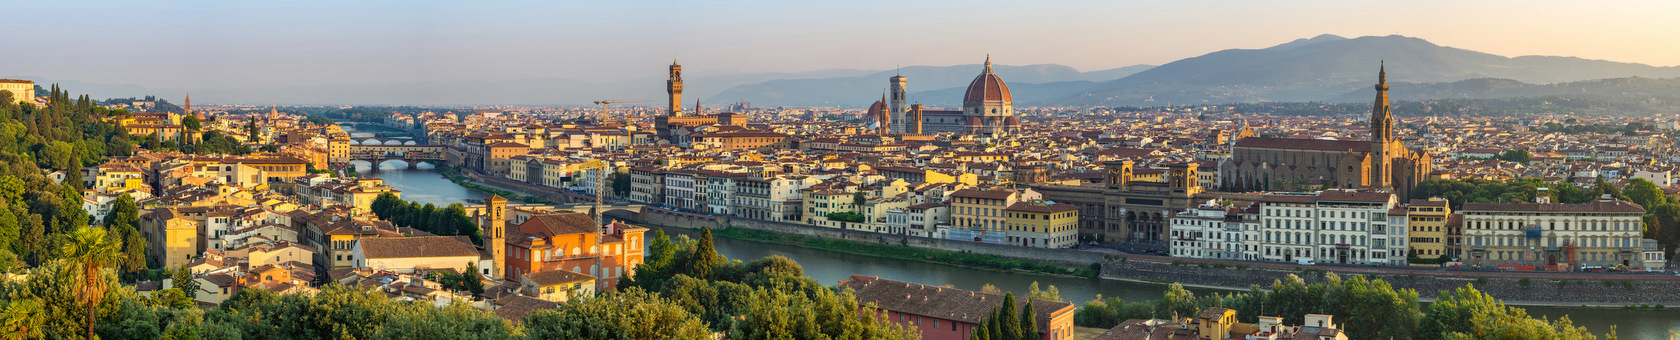 Florencja (Włochy) niesamowite miejsce na doskonalenie języka włoskiego